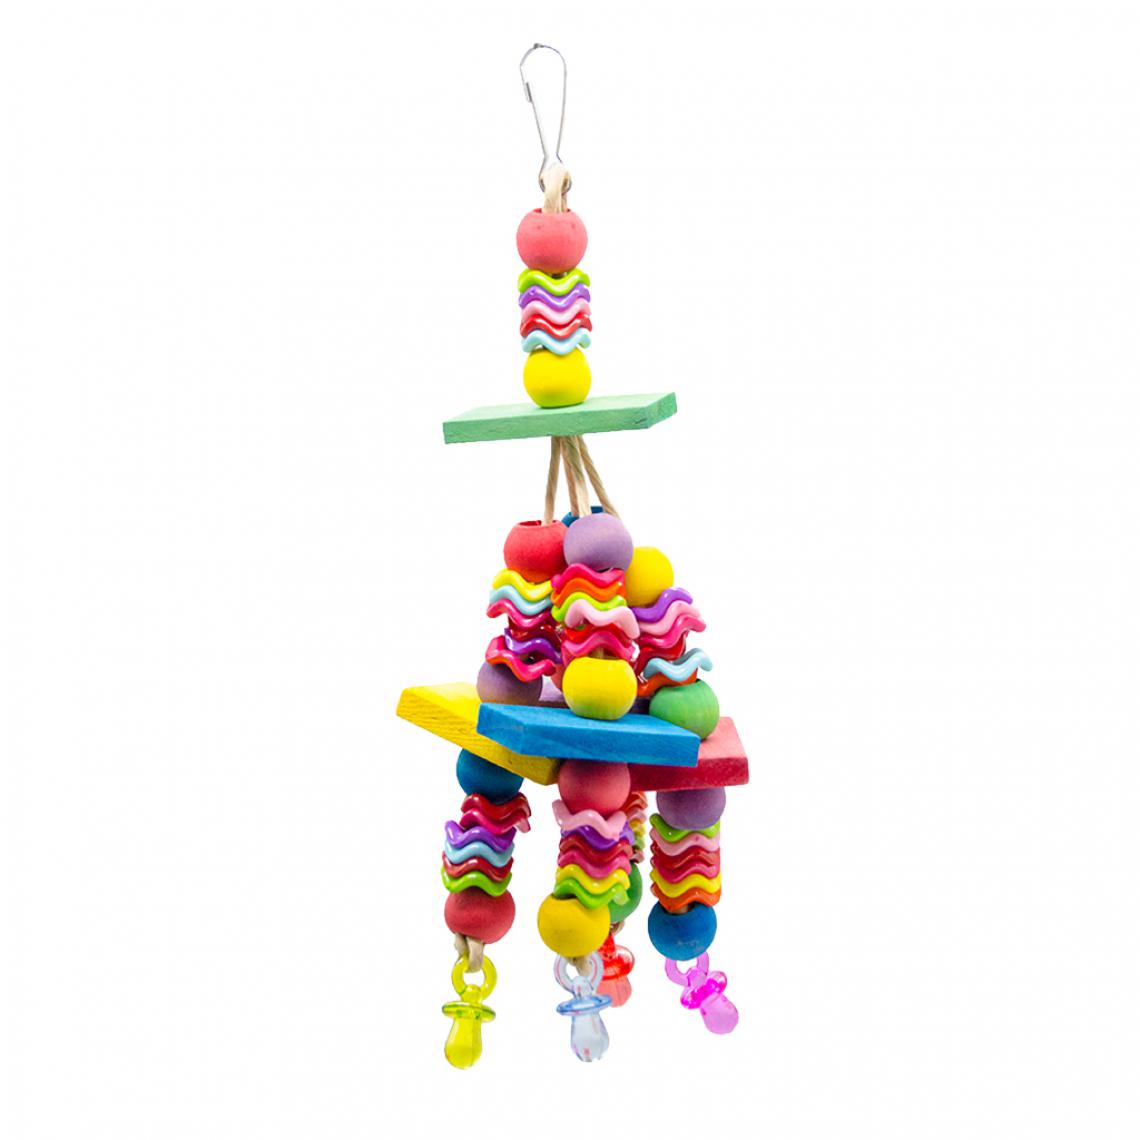 marque generique - Perch échelle en bois perroquet jouets perles colorées balançoire jouet - Jouet pour chien